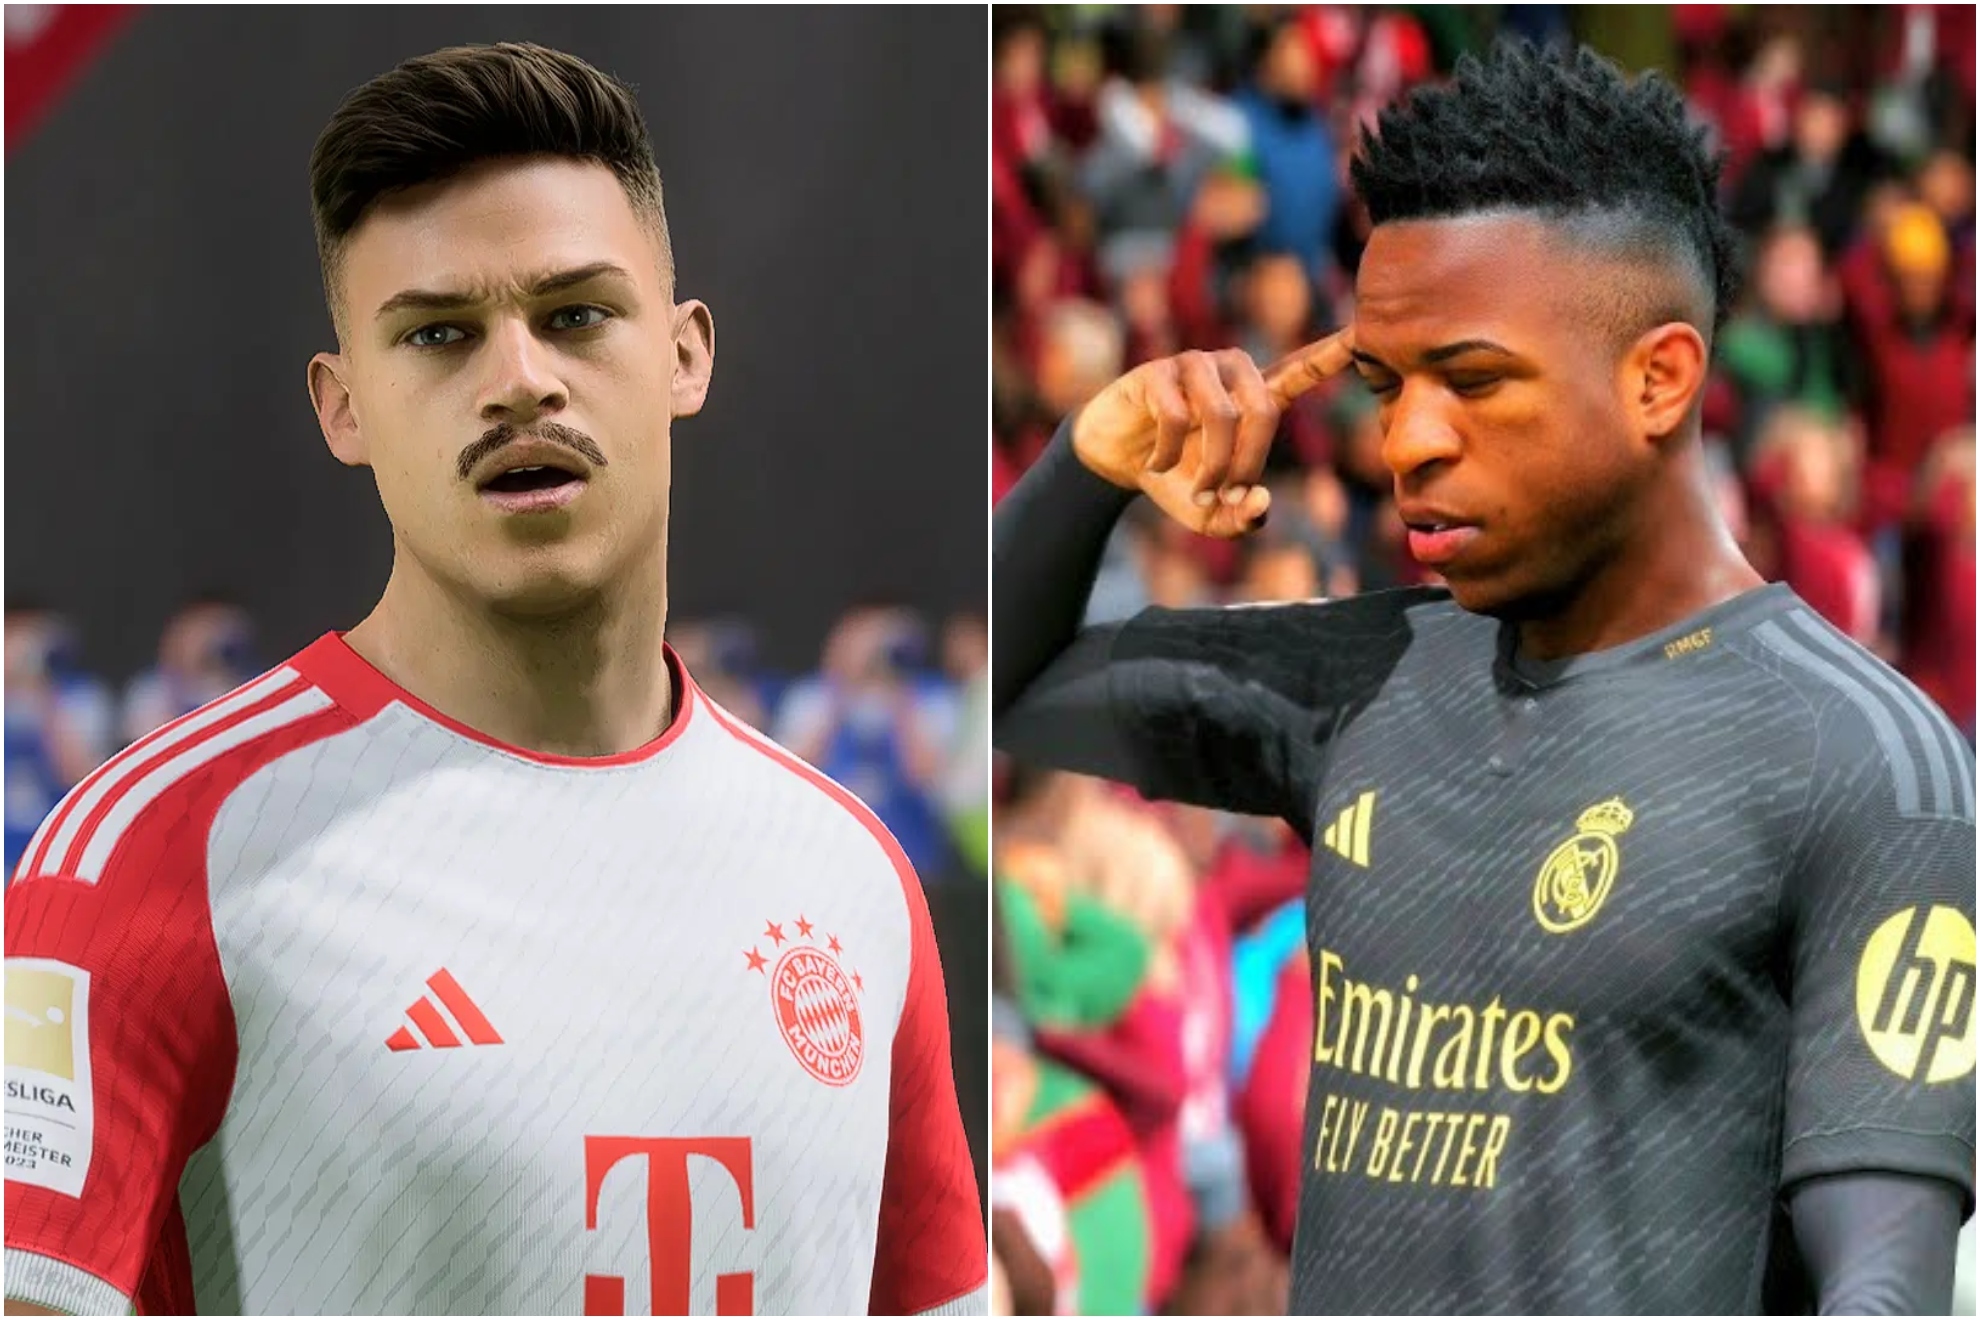 El uno por uno del Bayern contra el Madrid: �qui�n tiene mejor equipo seg�n EA FC 24?